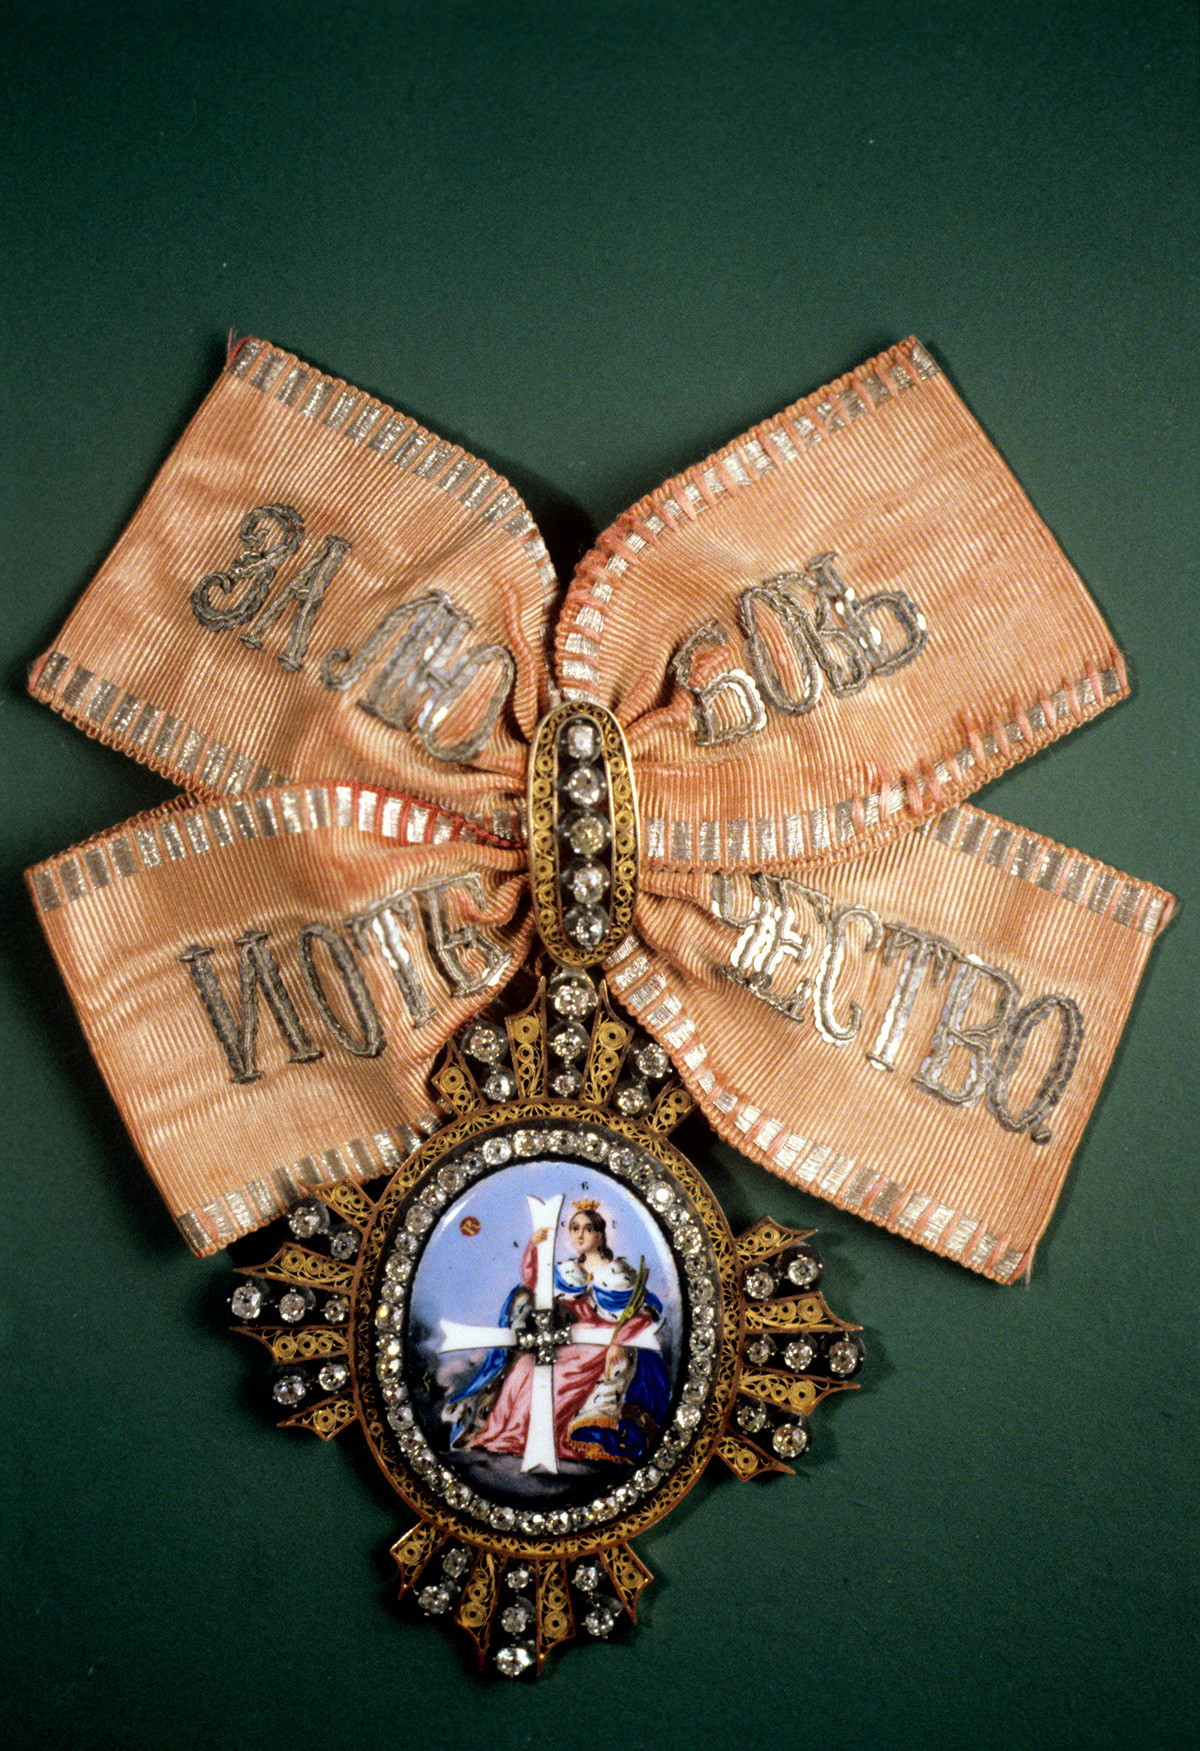 Знак Ордена свете великомученице Екатерине (или Орден ослобођења) којим су награђиване жене. Уведен је 1714. године. Колекција ордења и медаља одељења за нумизматику Ермитажа.